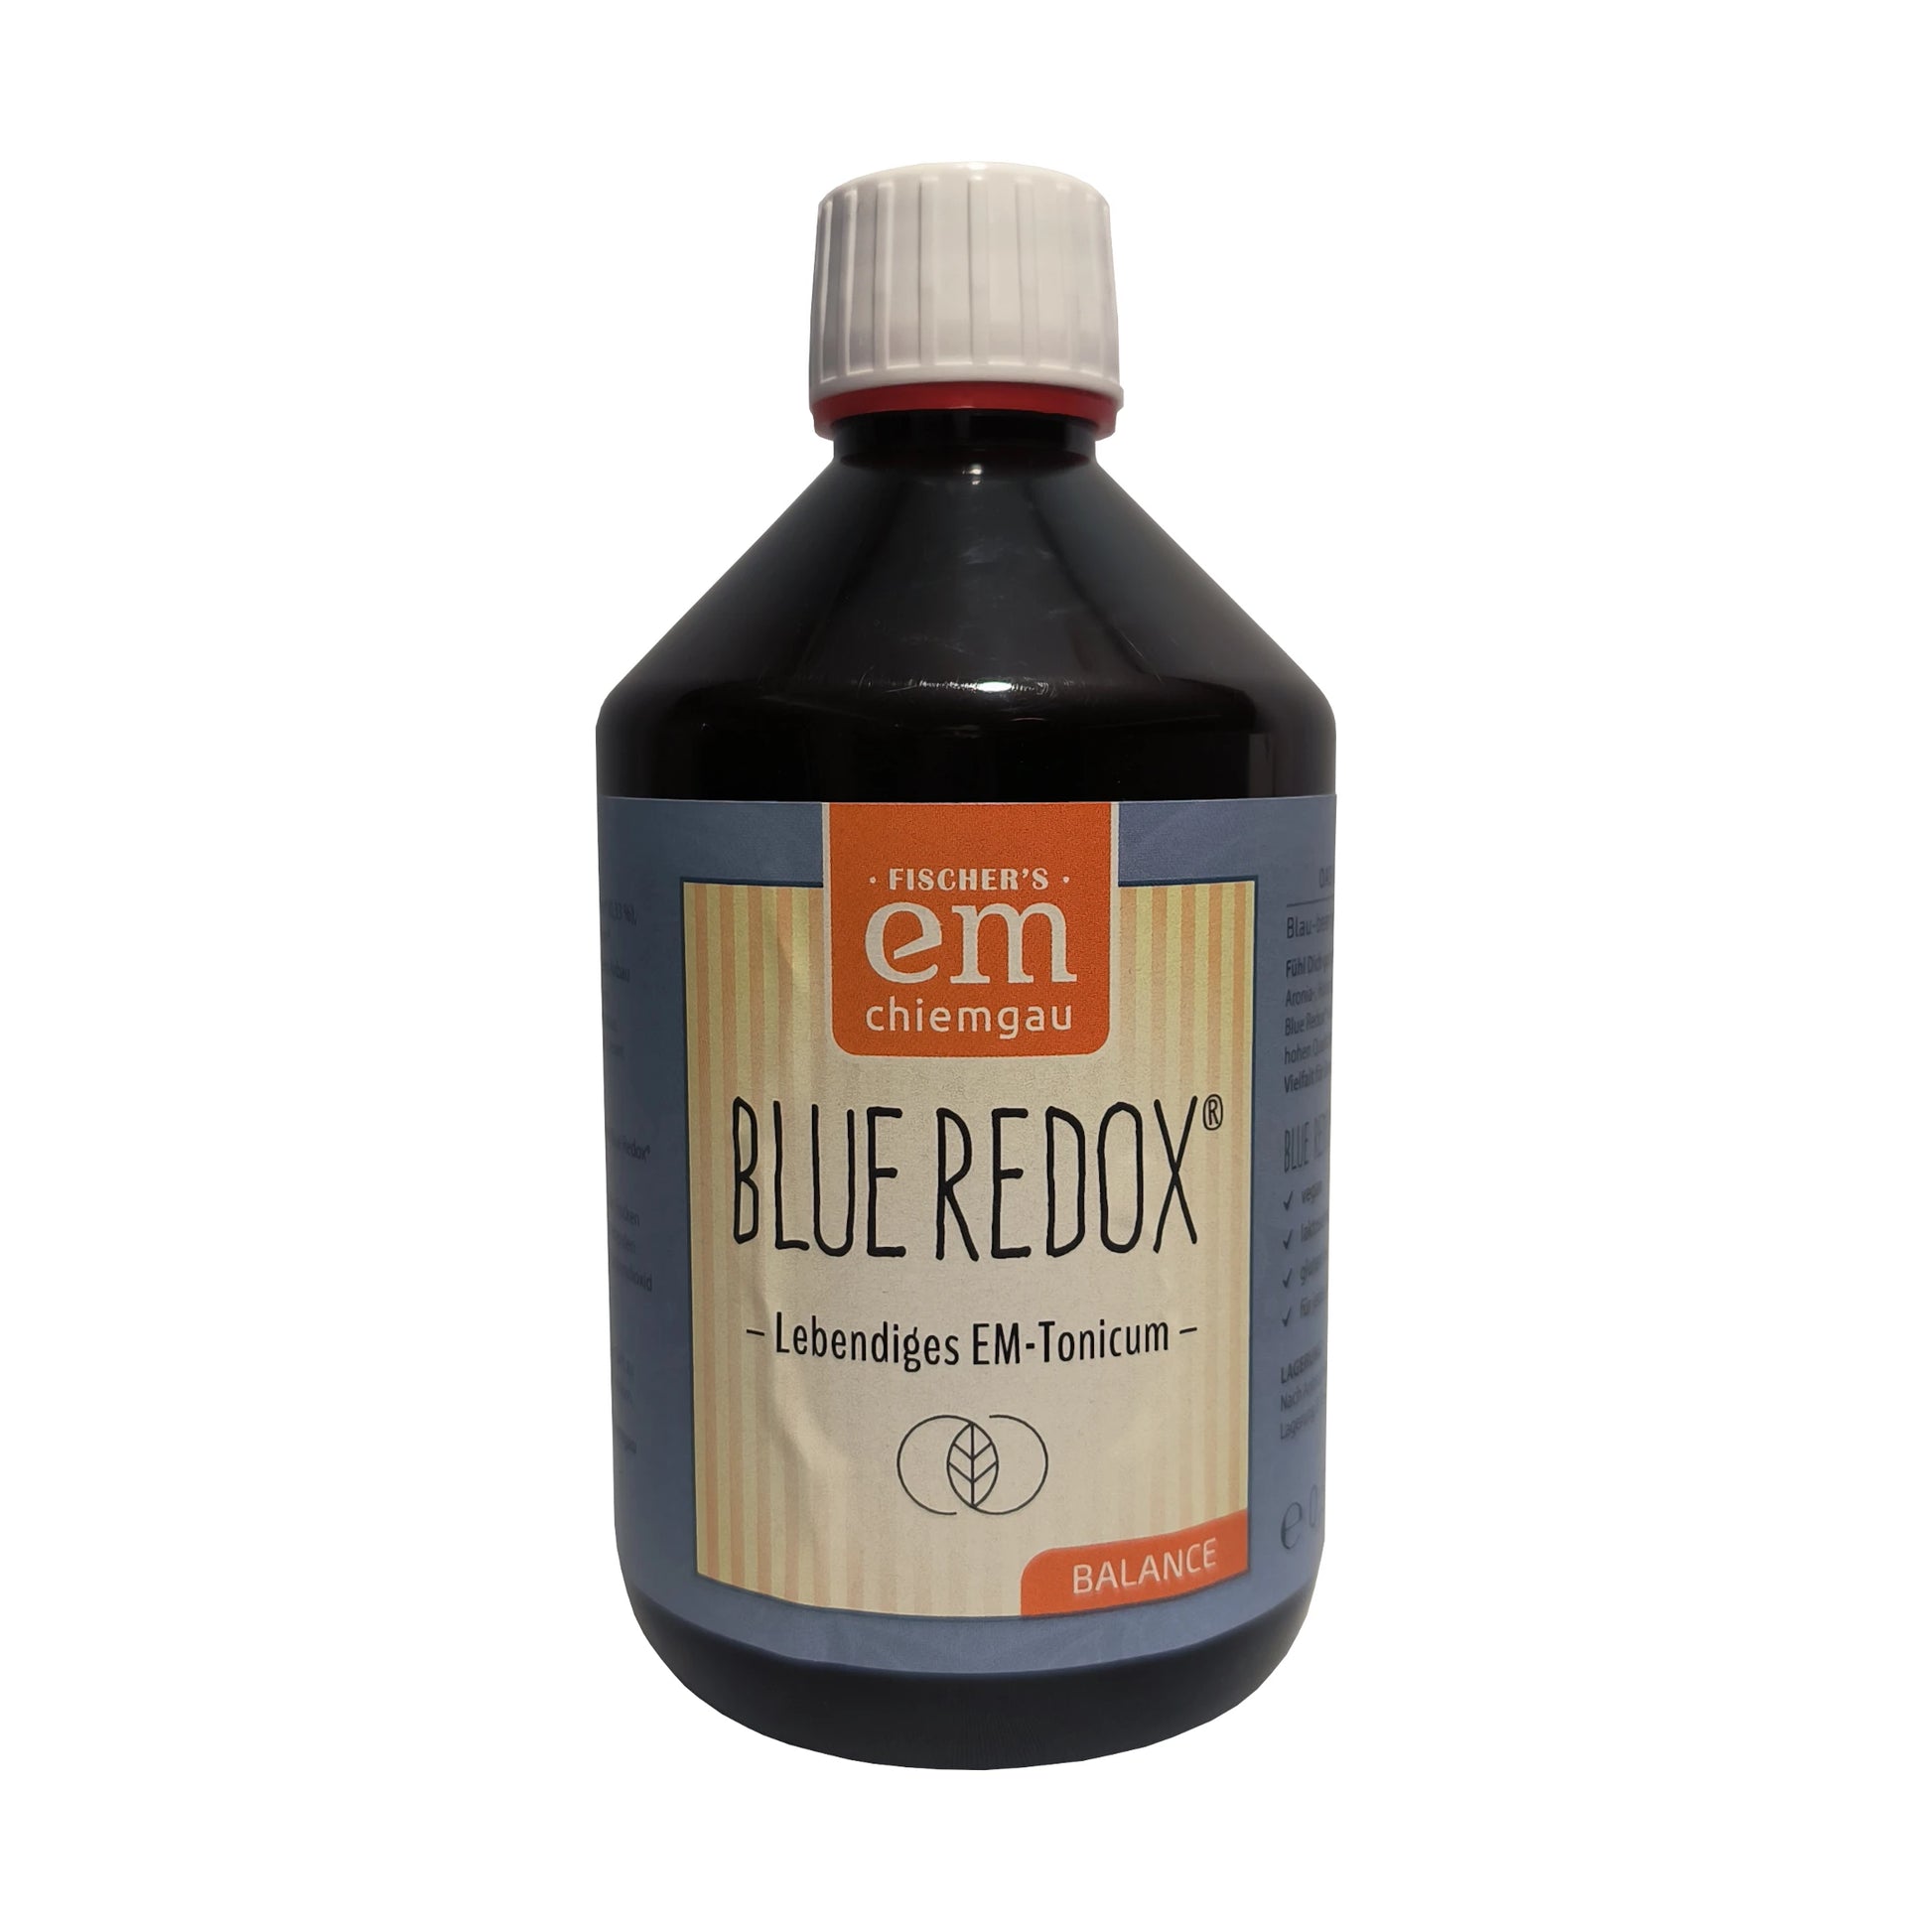 Blue Redox ein Fermentgetränk mit Aroniabeeren und Molke. Verwendung bei Magen-Darm-Befindlichkeiten